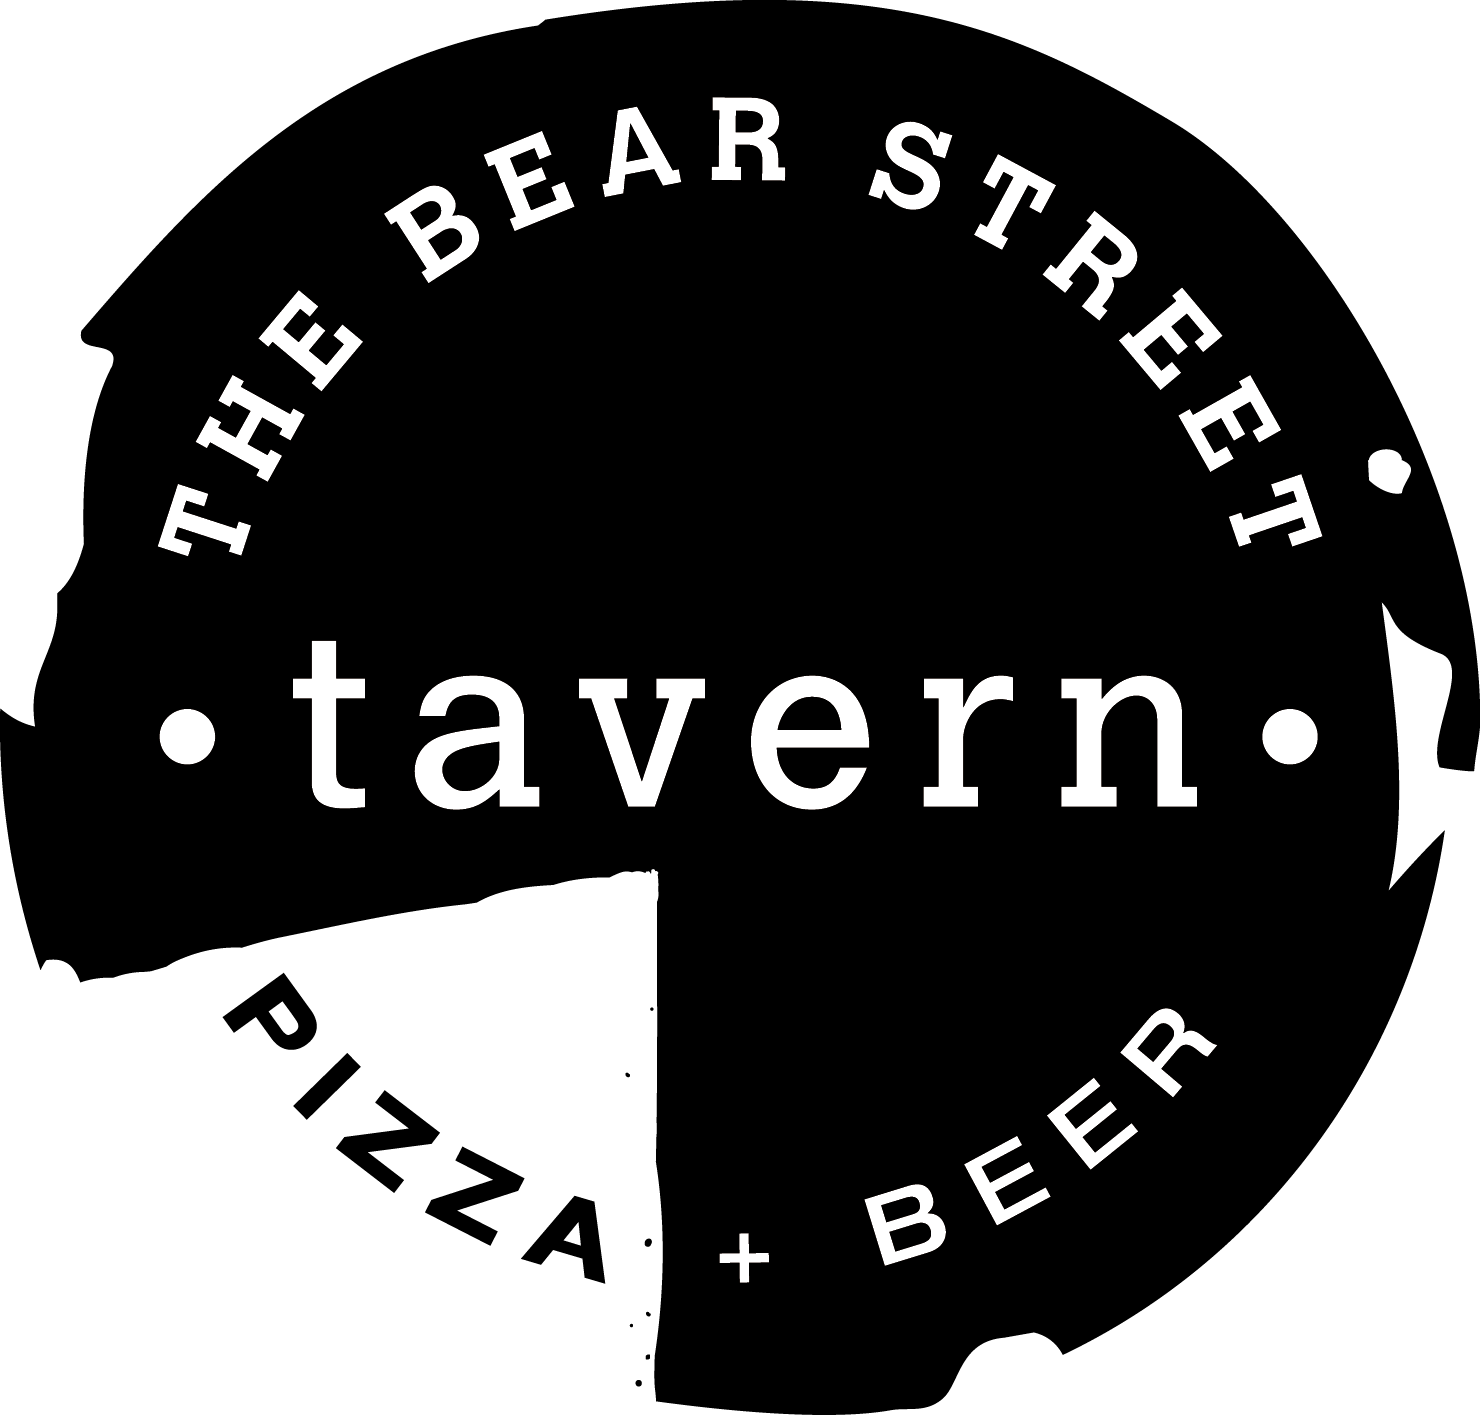 Bear Street Tavern